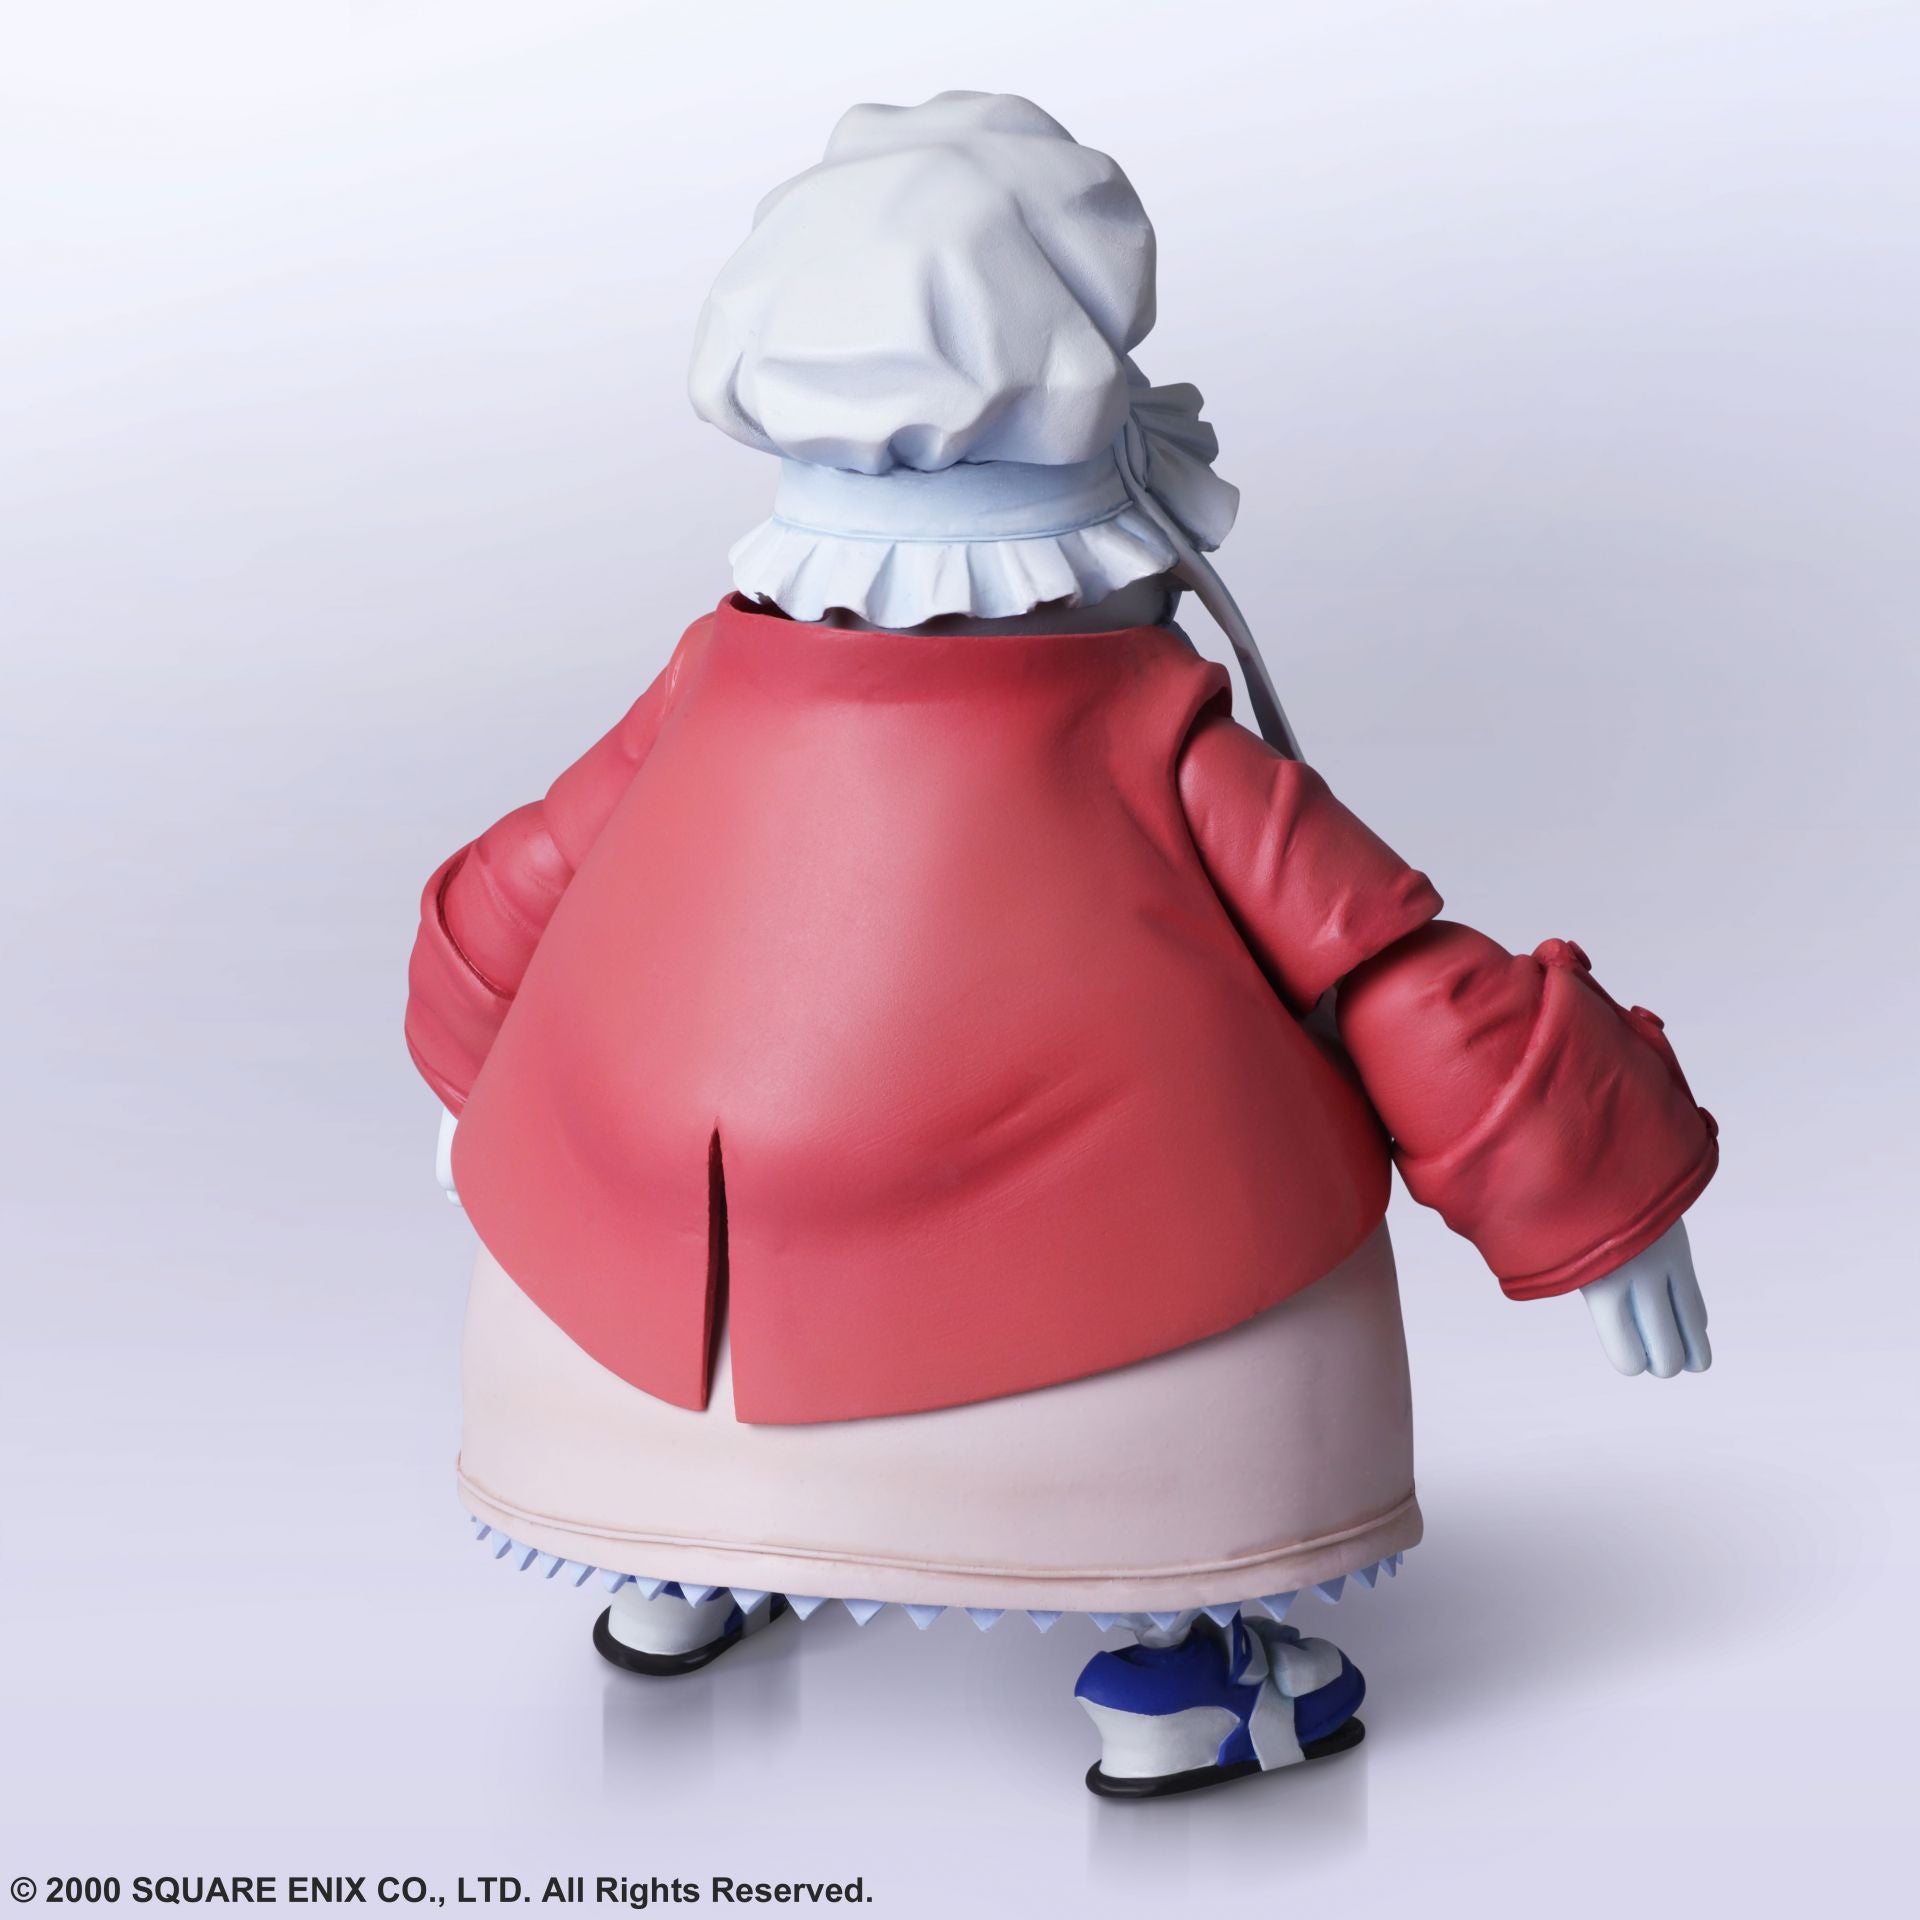 Bring Arts - Final Fantasy IX - Eiko Carol &amp; Quina Quen - Marvelous Toys